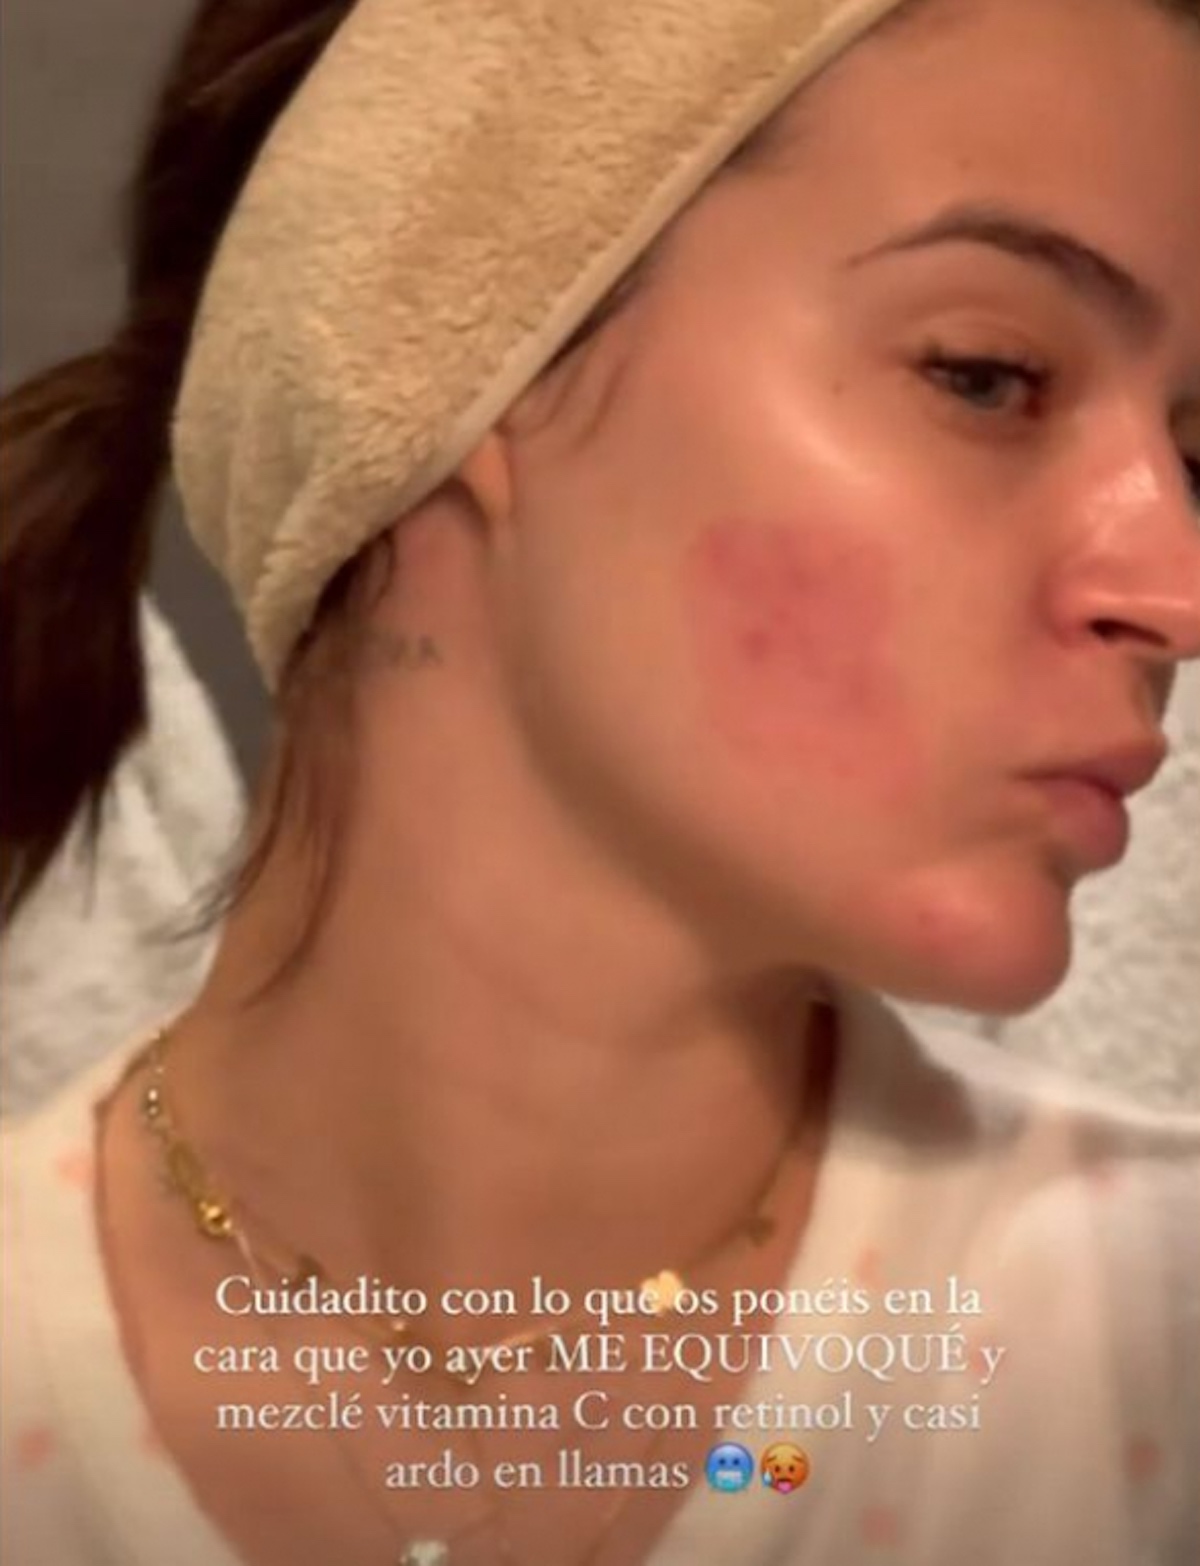 Imagen de Laura Escanes con una abrasión en el rostro.